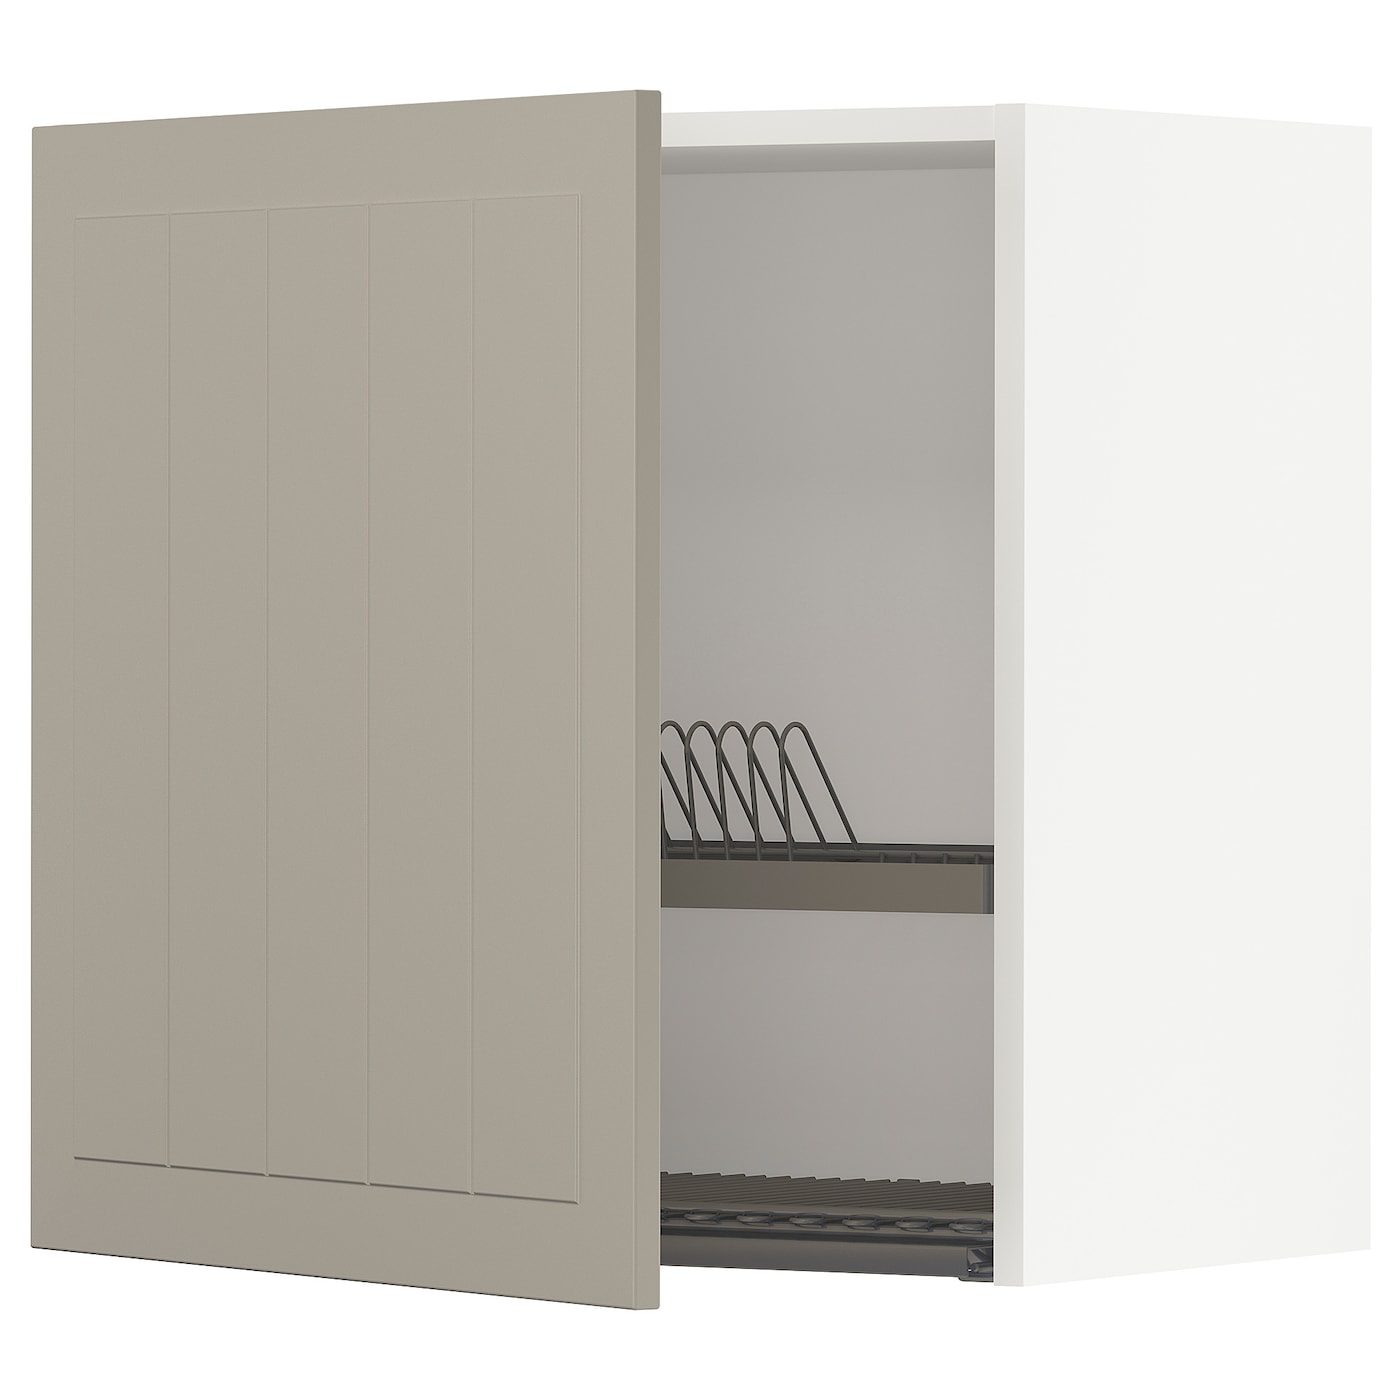 Навесной шкаф с сушилкой - METOD IKEA/ МЕТОД ИКЕА, 60х60 см, белый/светло-коричневый и